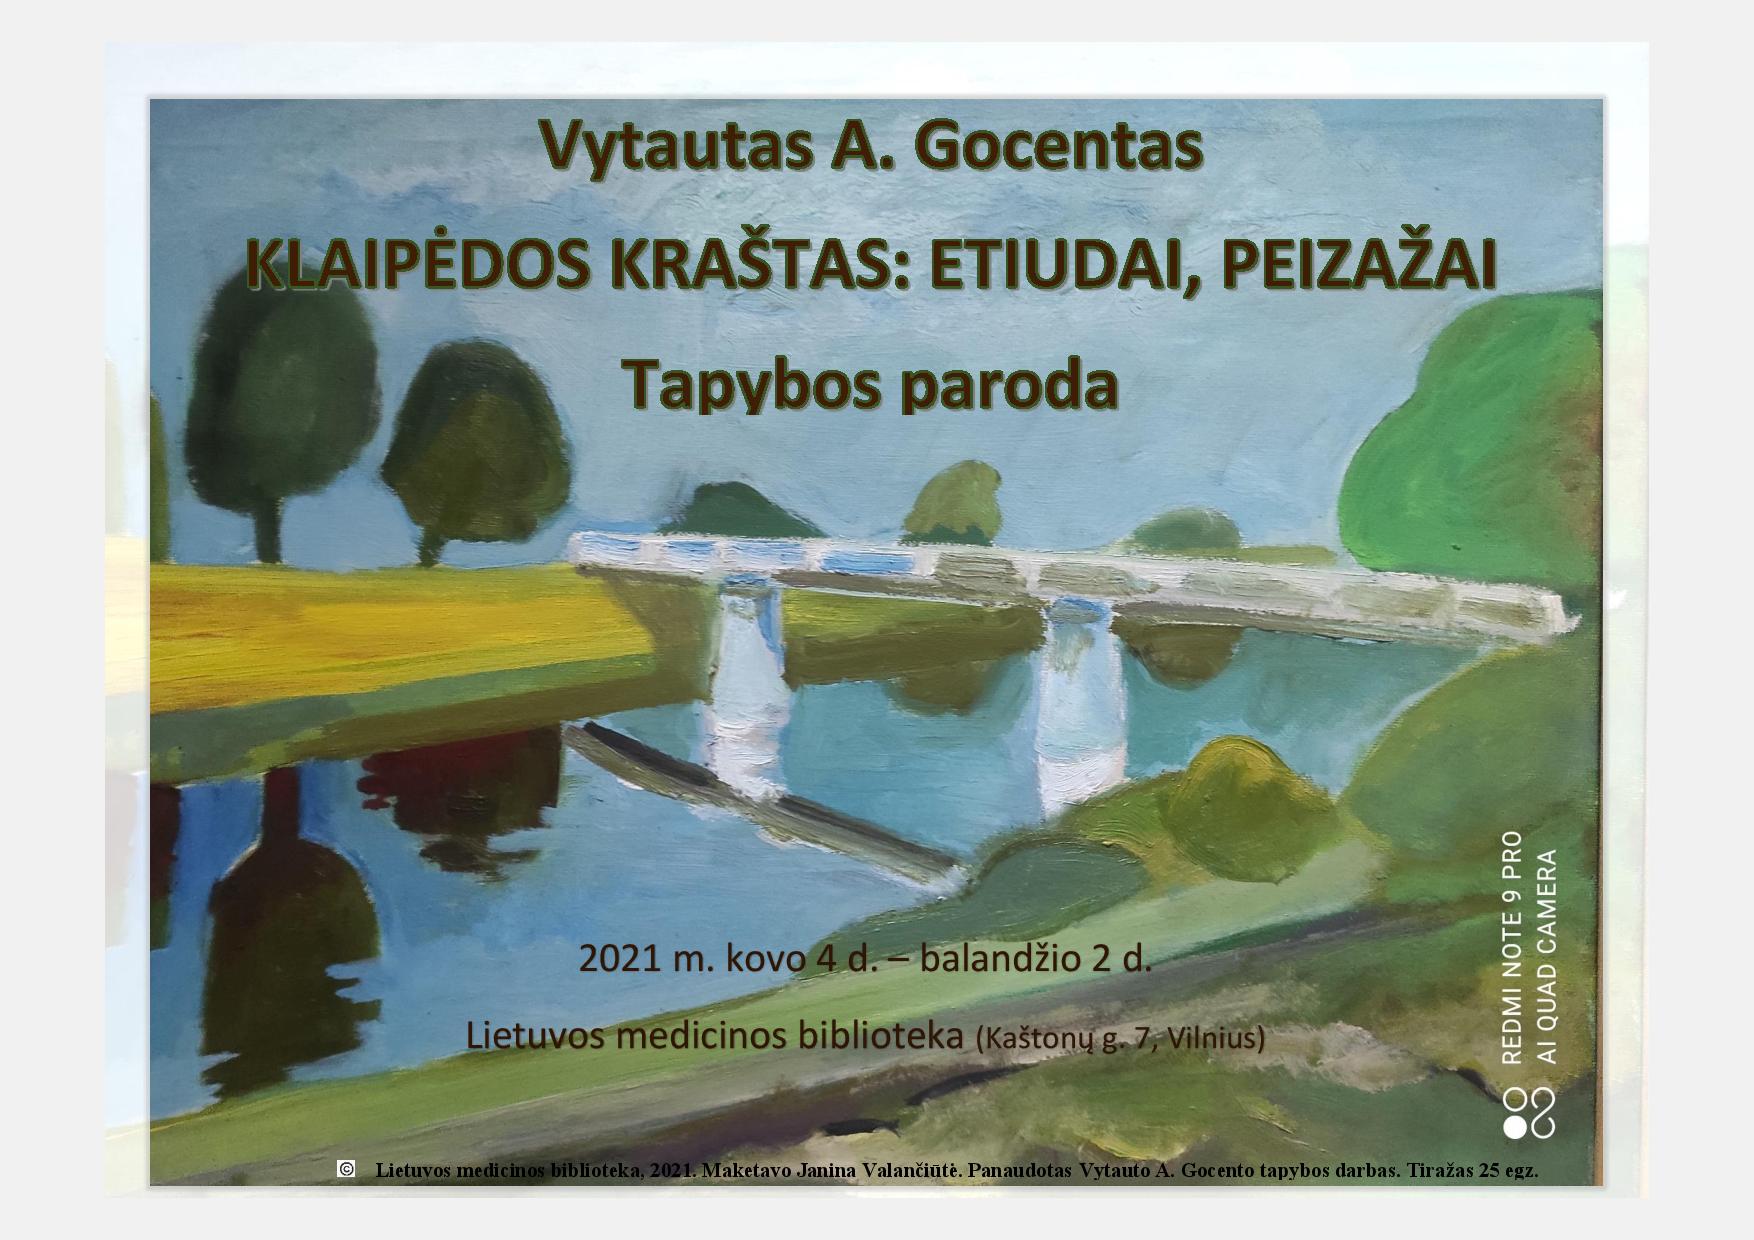 Vytauto A. Gocento tapybos paroda ,,Klaipėdos kraštas: etiudai, peizažai”. Jeigu esate sveiki, laikydamiesi saugumo reikalavimų jau galite apžiūrėti parodą